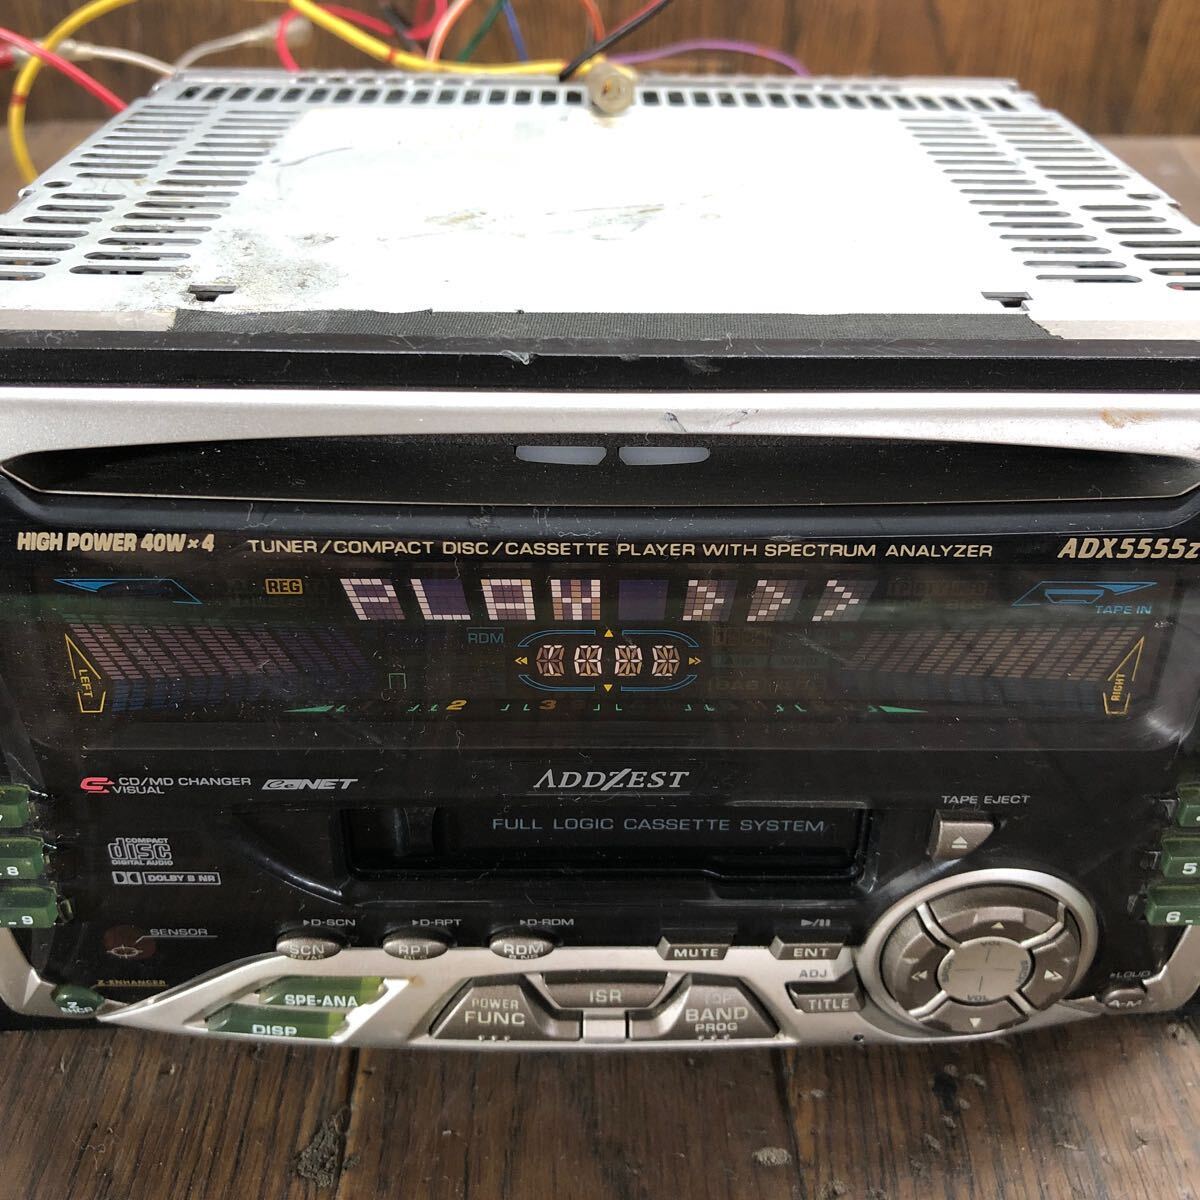 AV4-288 супер-скидка машина стерео ADDZEST clarion PS-2181J ADX5555z кассета FM/AM плеер корпус только простой рабочее состояние подтверждено б/у текущее состояние товар 